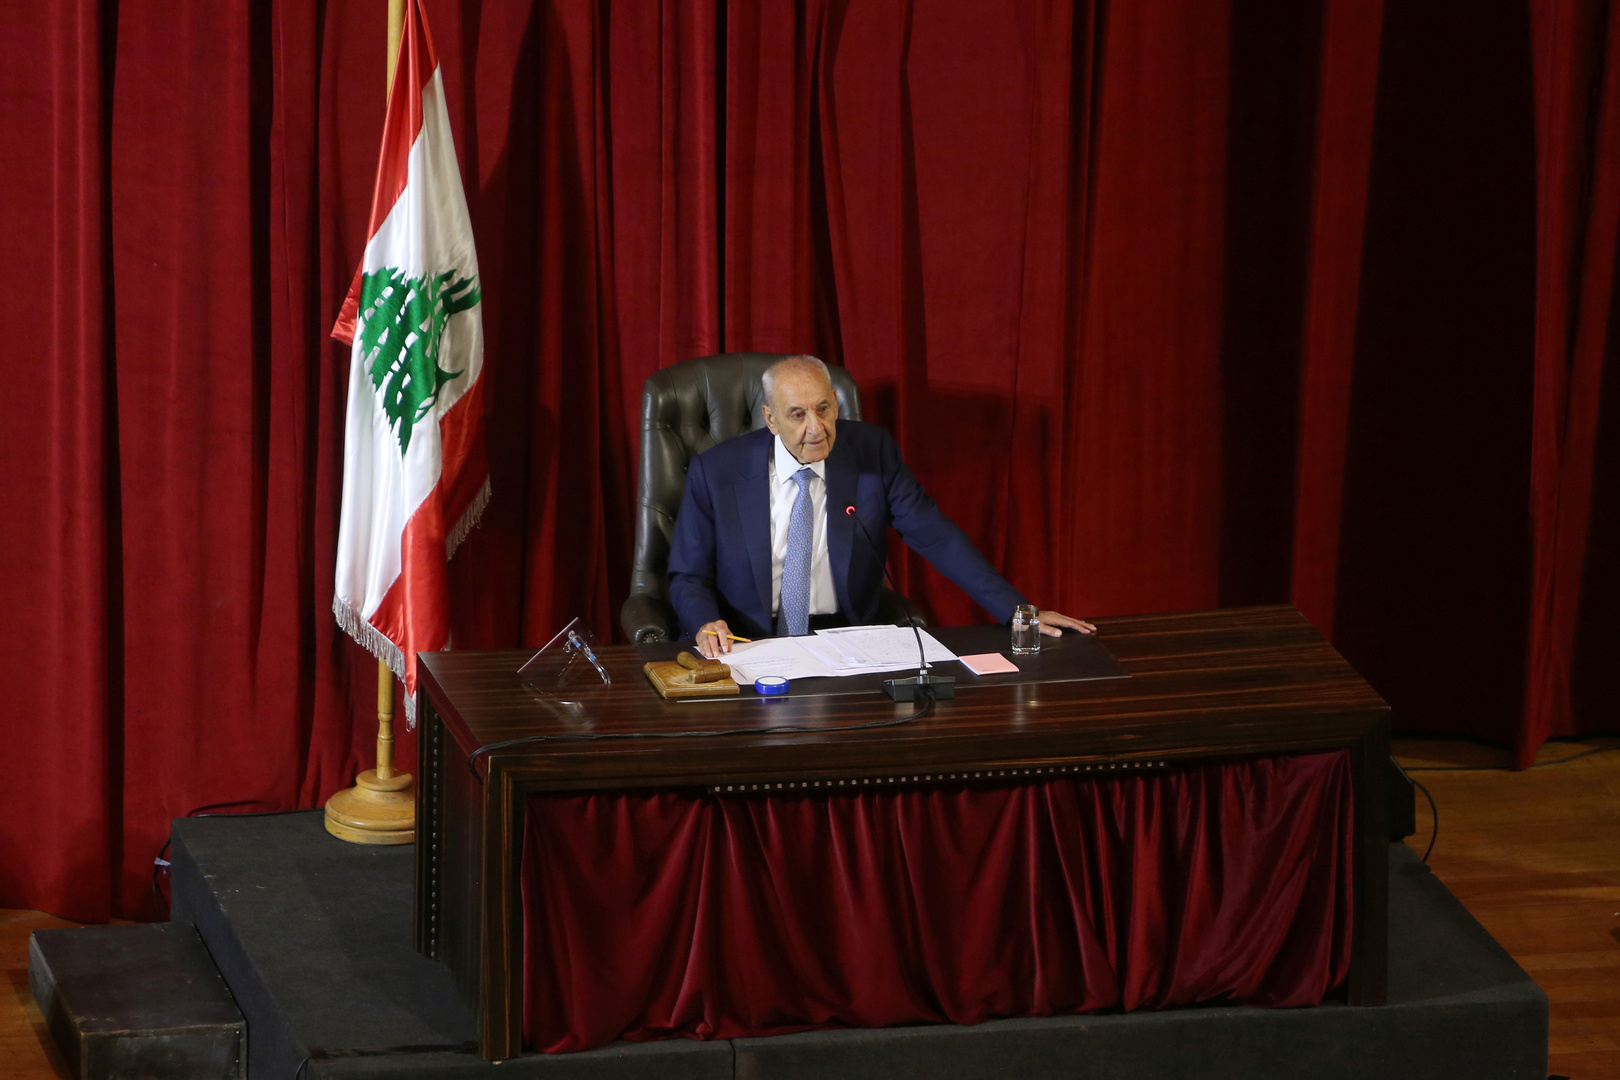 النواب اللبناني يقبل استقالة 8 أعضاء بينهم مروان حمادة رغم تراجعه